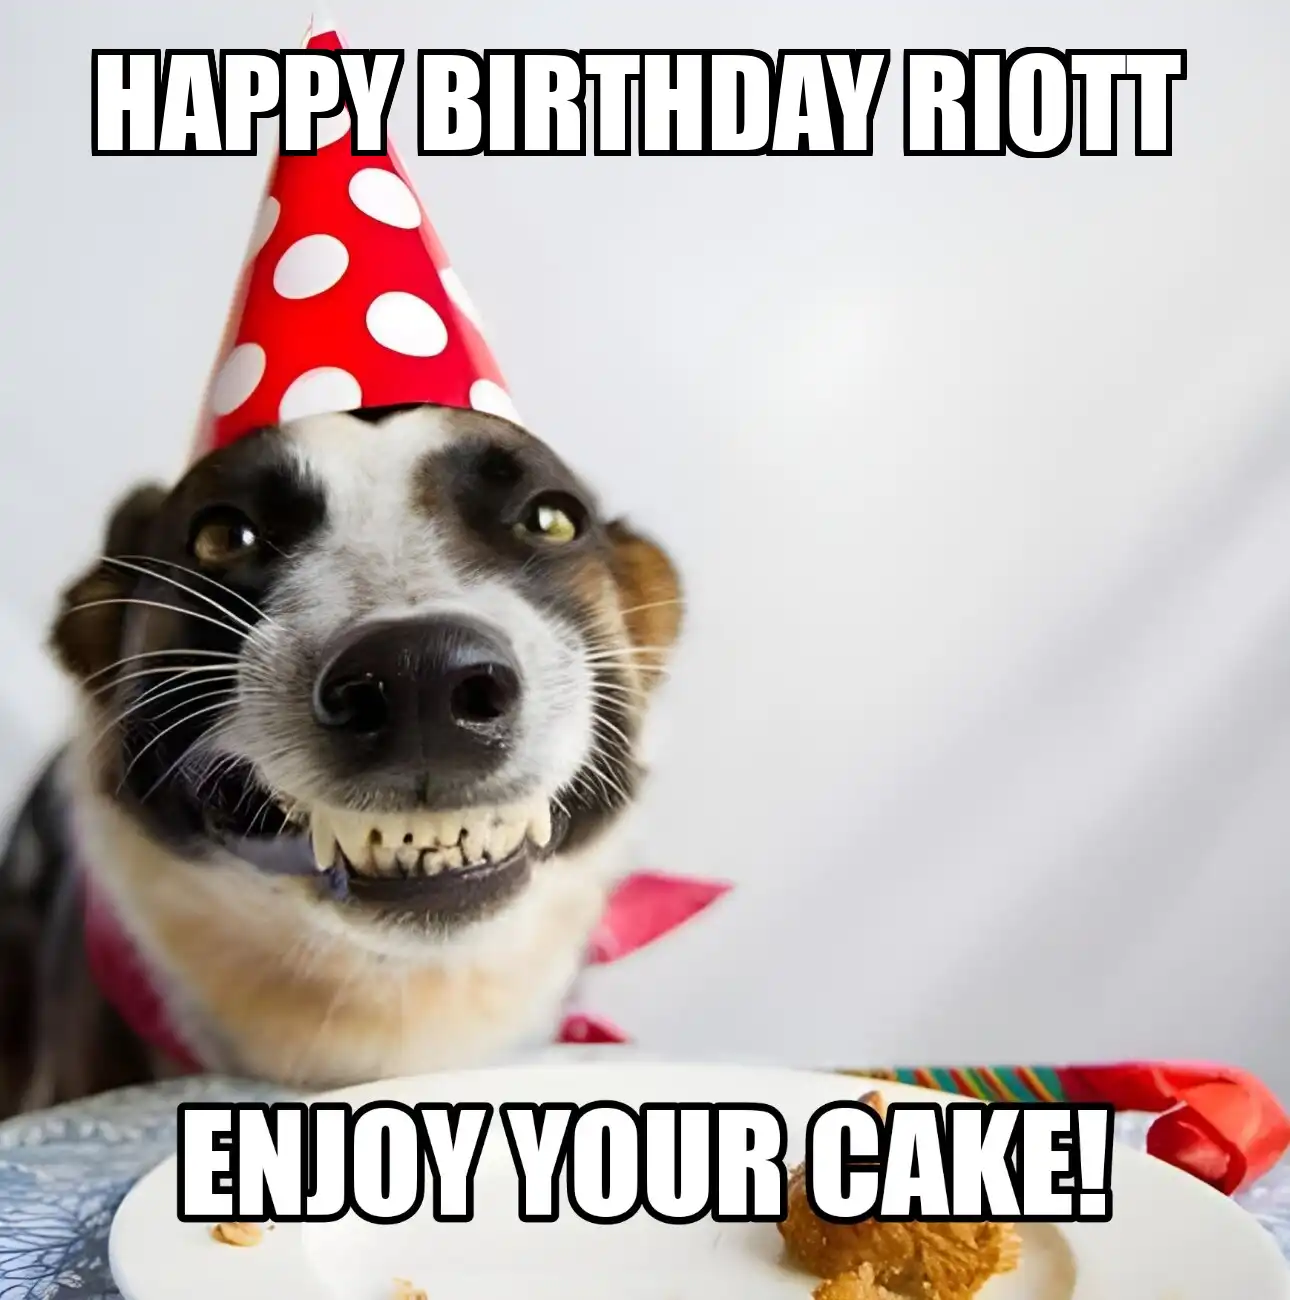 Happy Birthday Riott Enjoy Your Cake Dog Meme